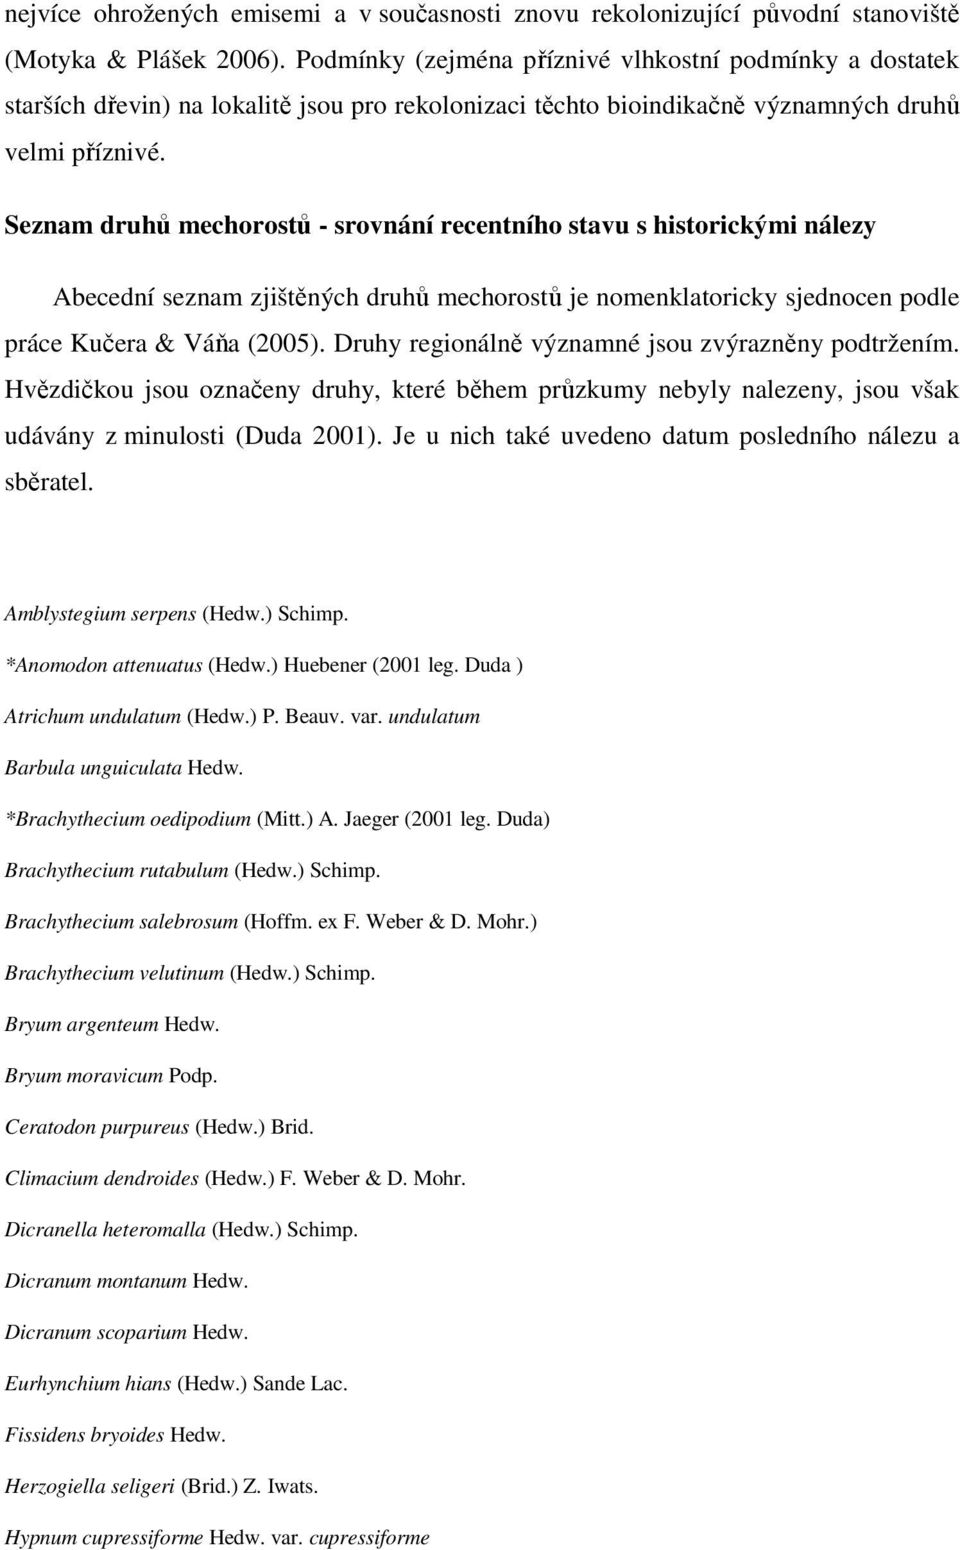 Seznam druhů mechorostů - srovnání recentního stavu s historickými nálezy Abecední seznam zjištěných druhů mechorostů je nomenklatoricky sjednocen podle práce Kučera & Váňa (2005).